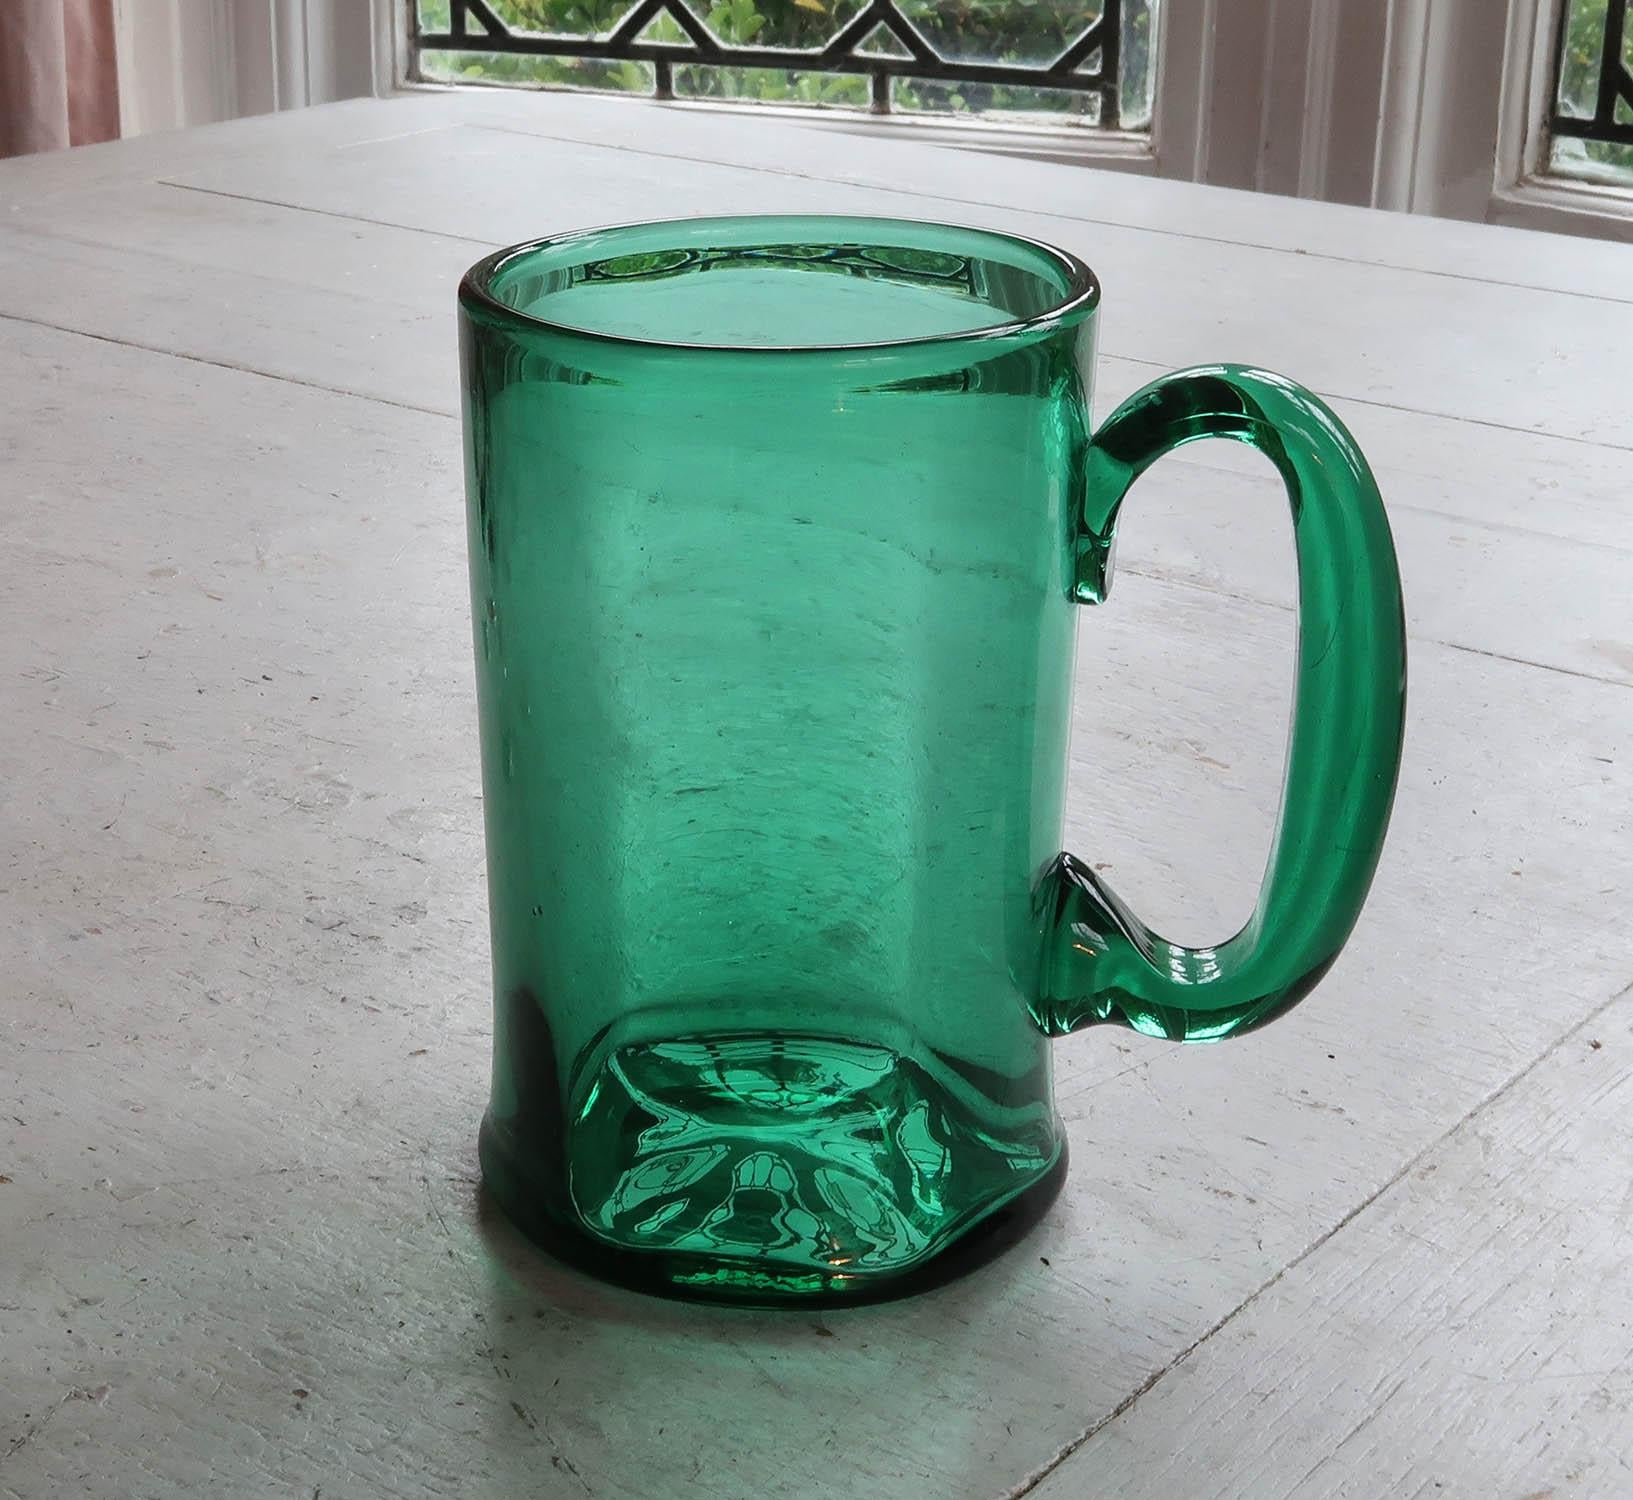 Sehr eleganter grüner Glaskrug

Wunderbare Farbe von Grün

Hervorragend als Krug zu verwenden, kann aber auch als Blumenvase genutzt werden

Guter Zustand.

Kostenloser Versand in Großbritannien
